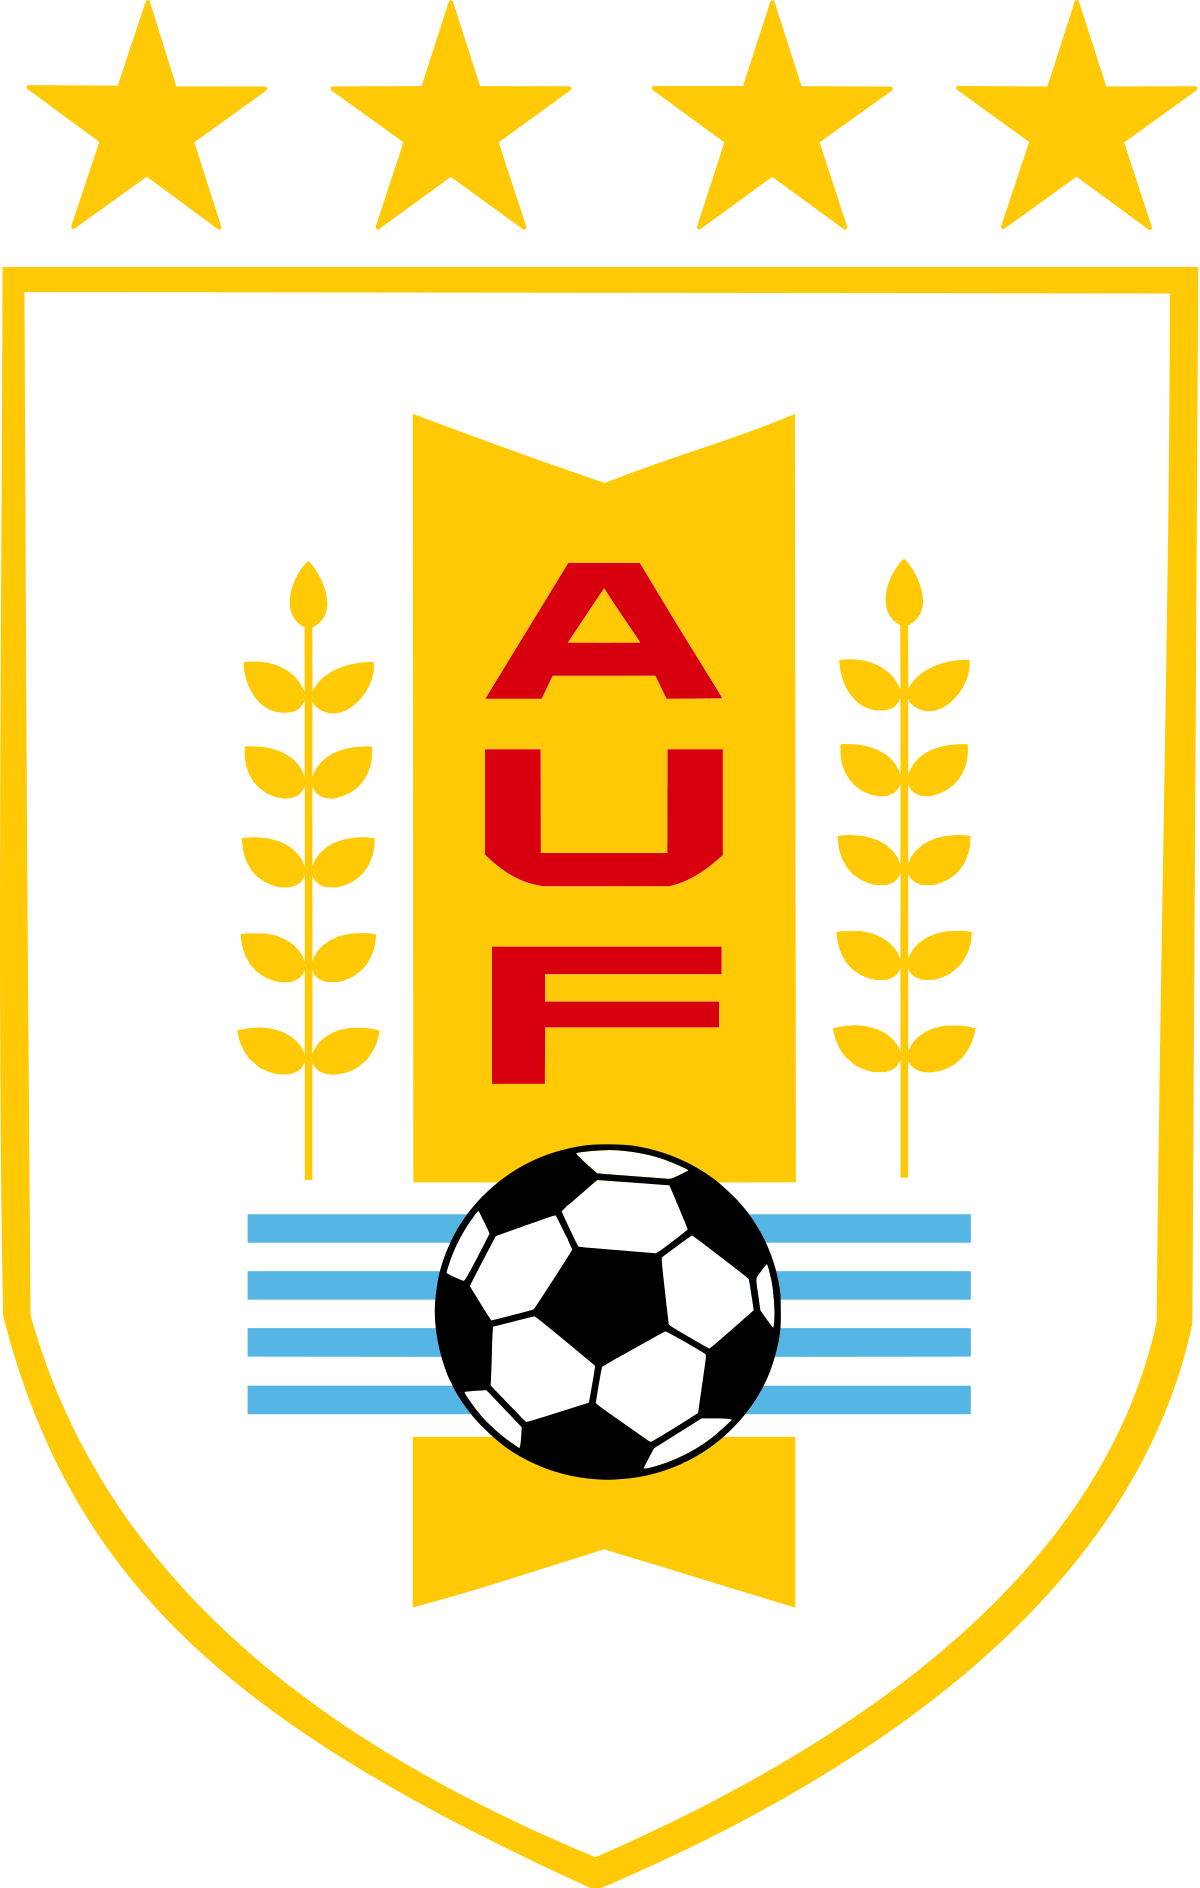 Uruguay Logo - Uruguay national football team